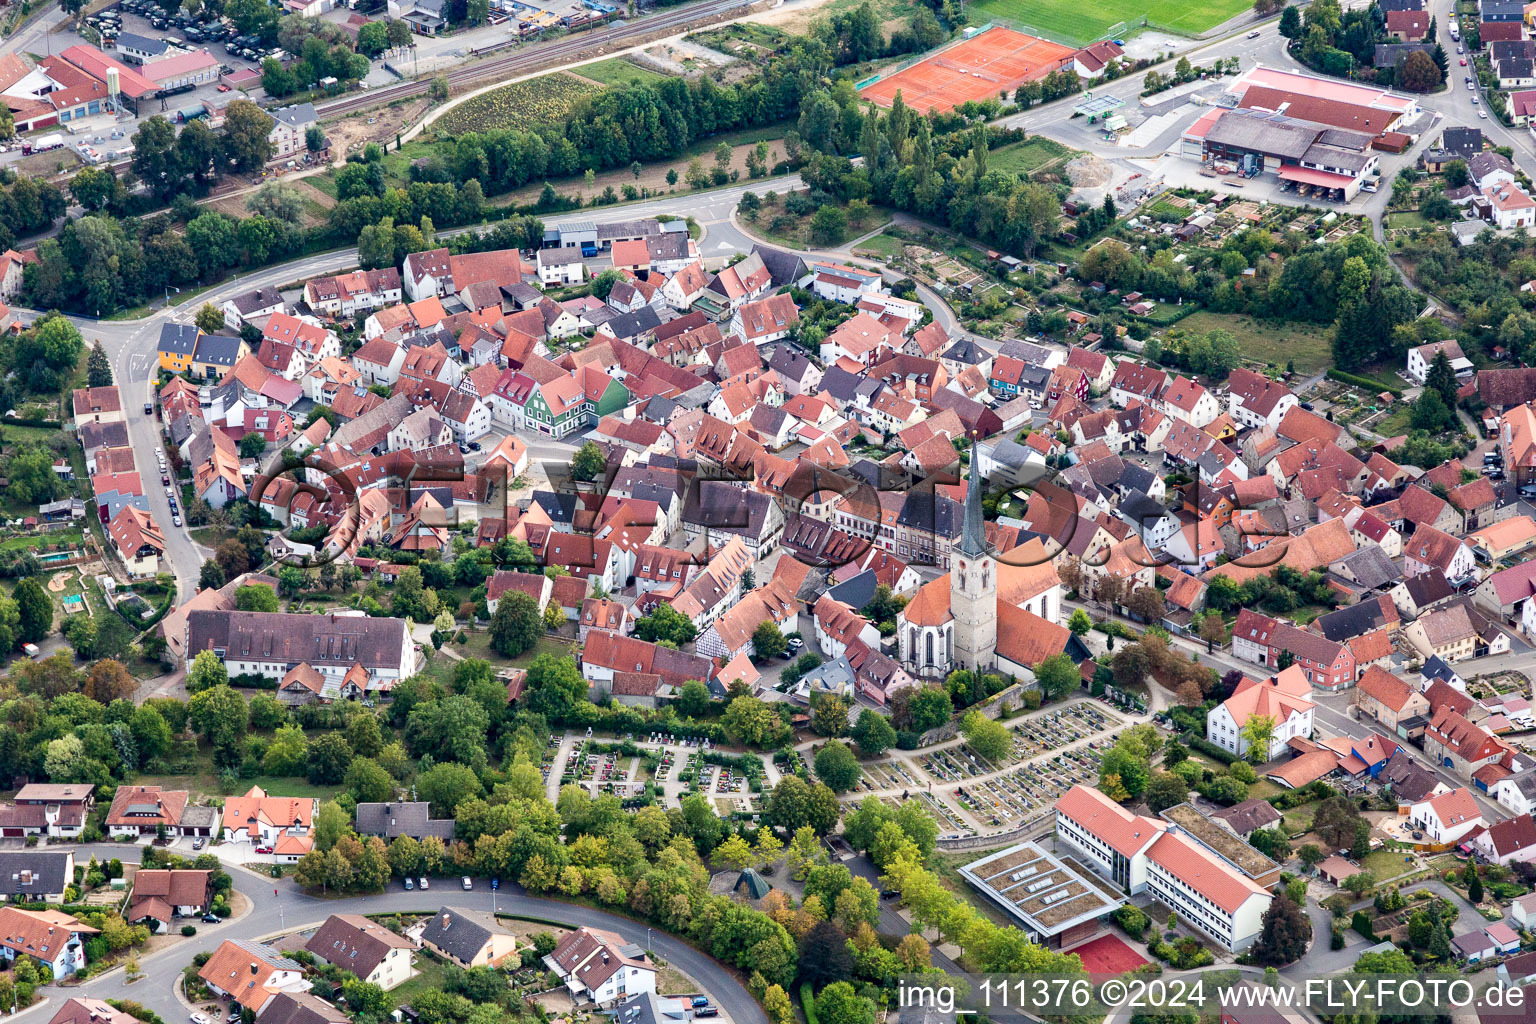 Vue aérienne de Bâtiment d'église au centre du village à Grünsfeld dans le département Bade-Wurtemberg, Allemagne